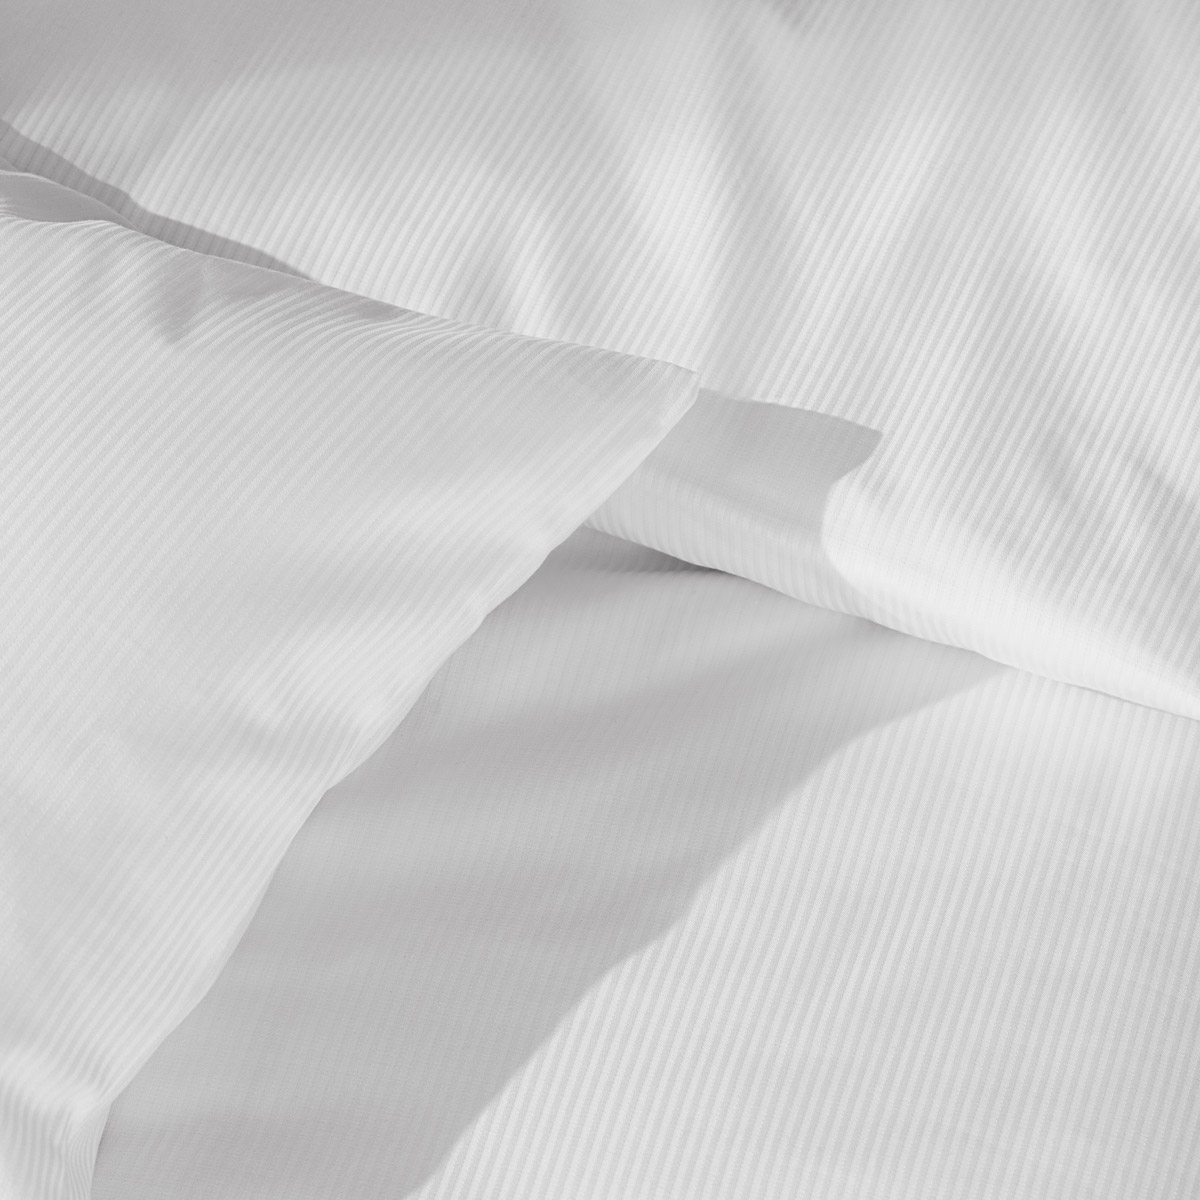 Detailaufnahme weiße Malaga Satin Bettwäsche mit Feinstreifen